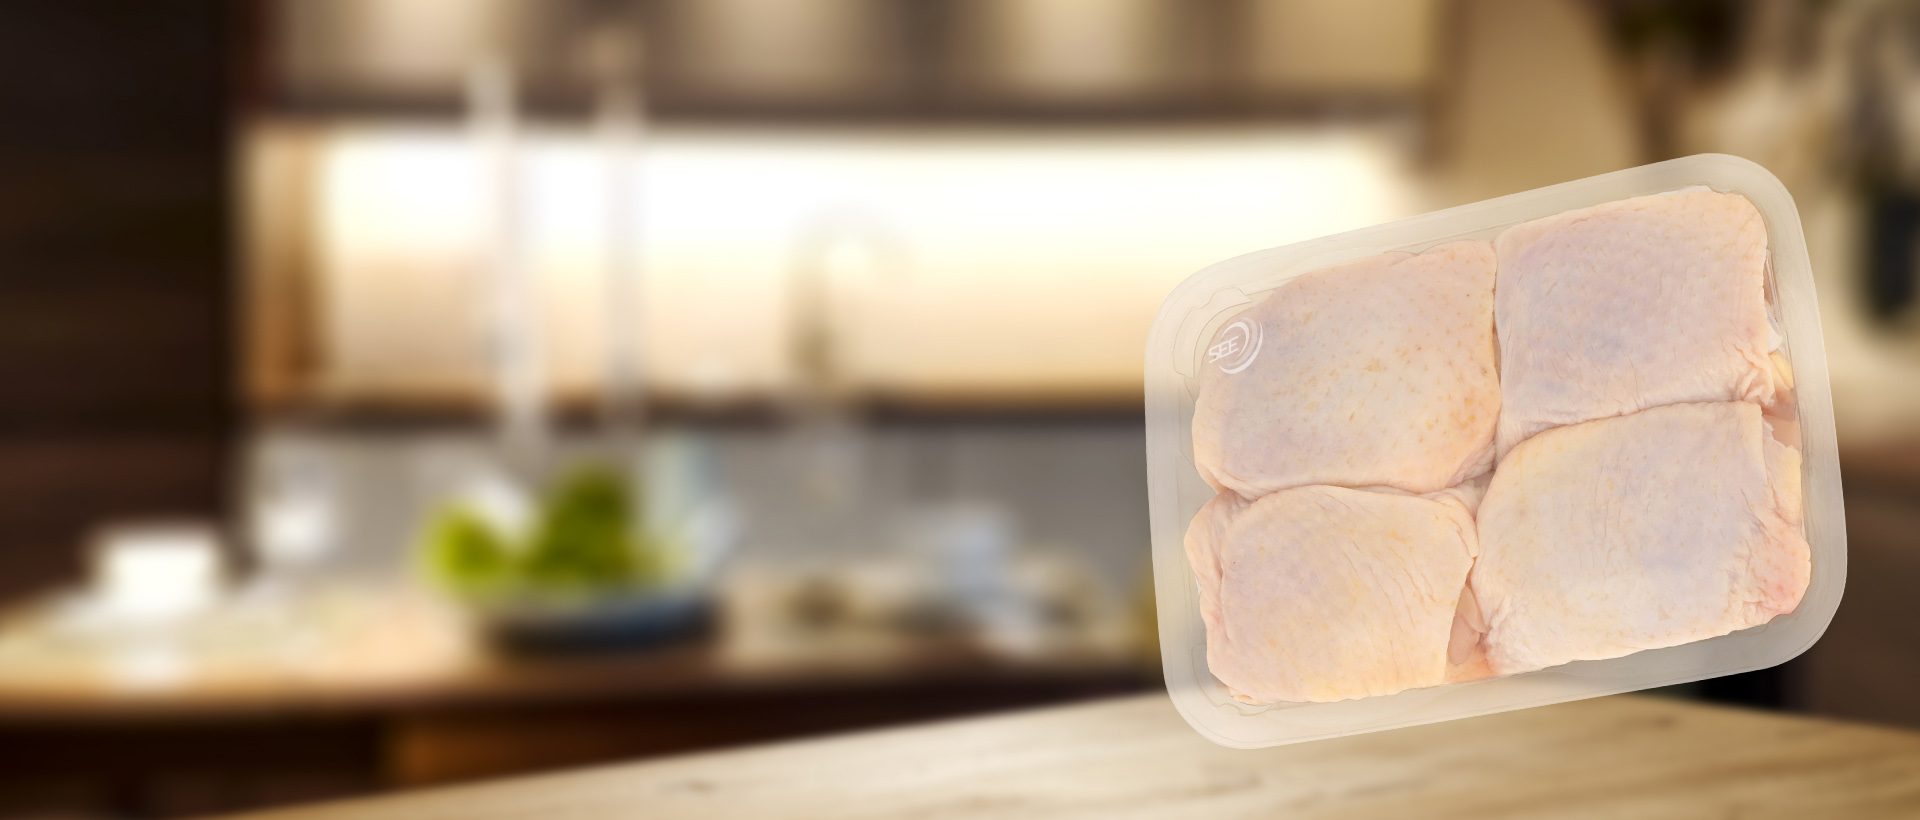 투명 트레이에 담아 CRYOVAC 브랜드 SES 투명 오버랩 필름으로 포장한 닭다리 